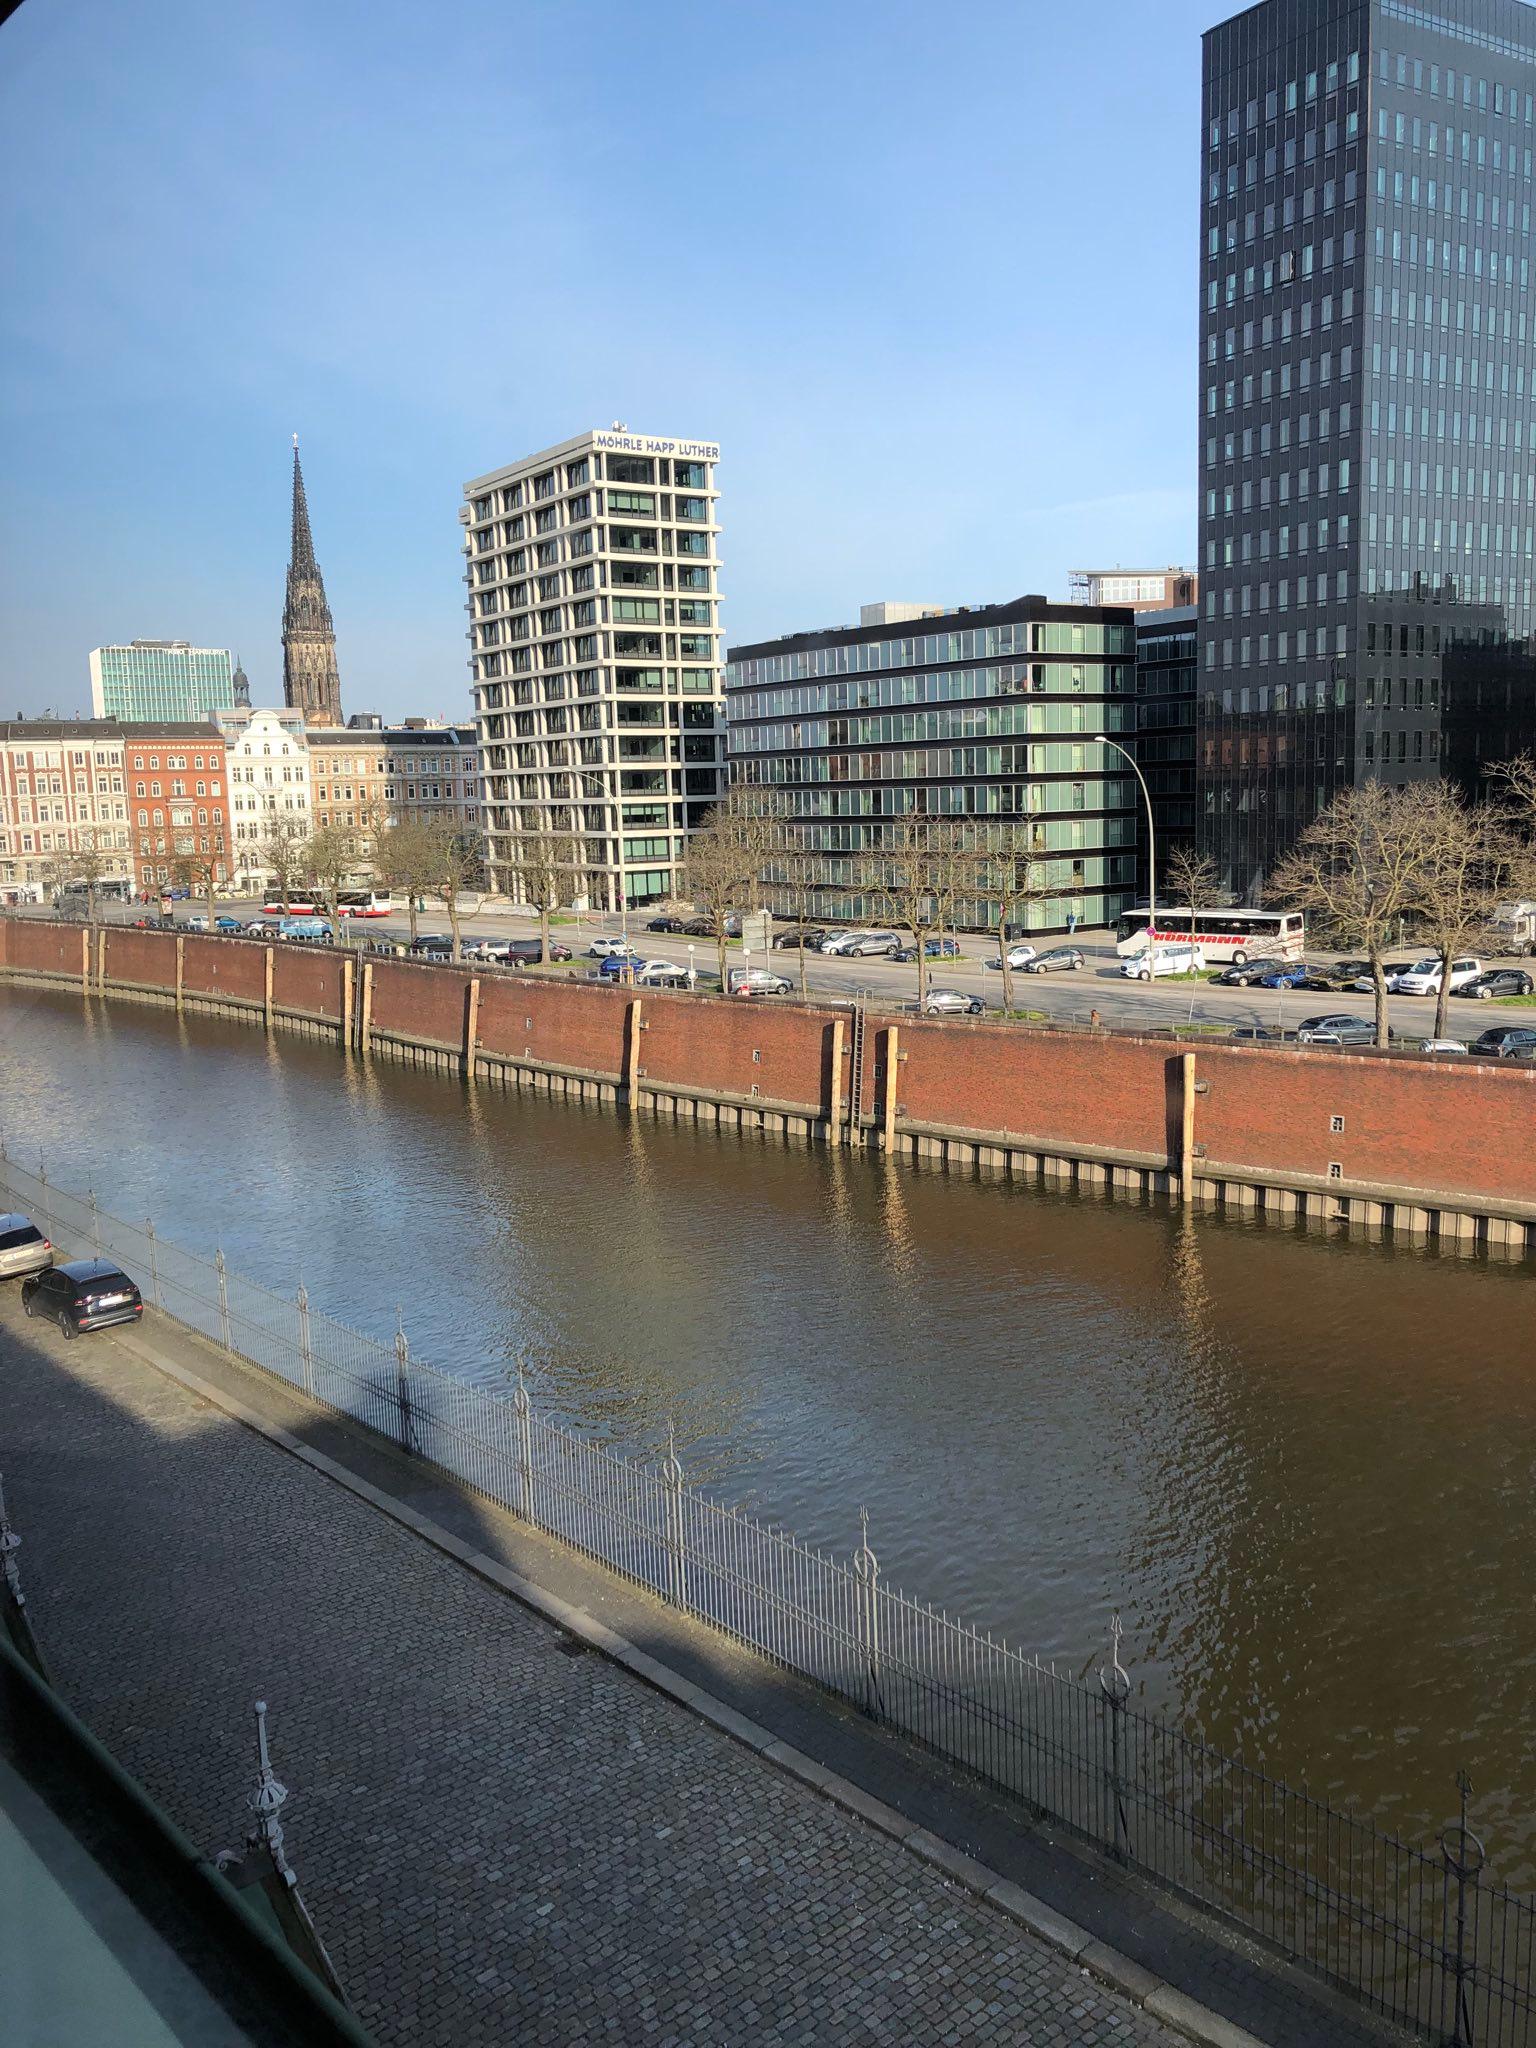 Zollkanal in Hamburg mit Gebäuden an der Dovenfleet